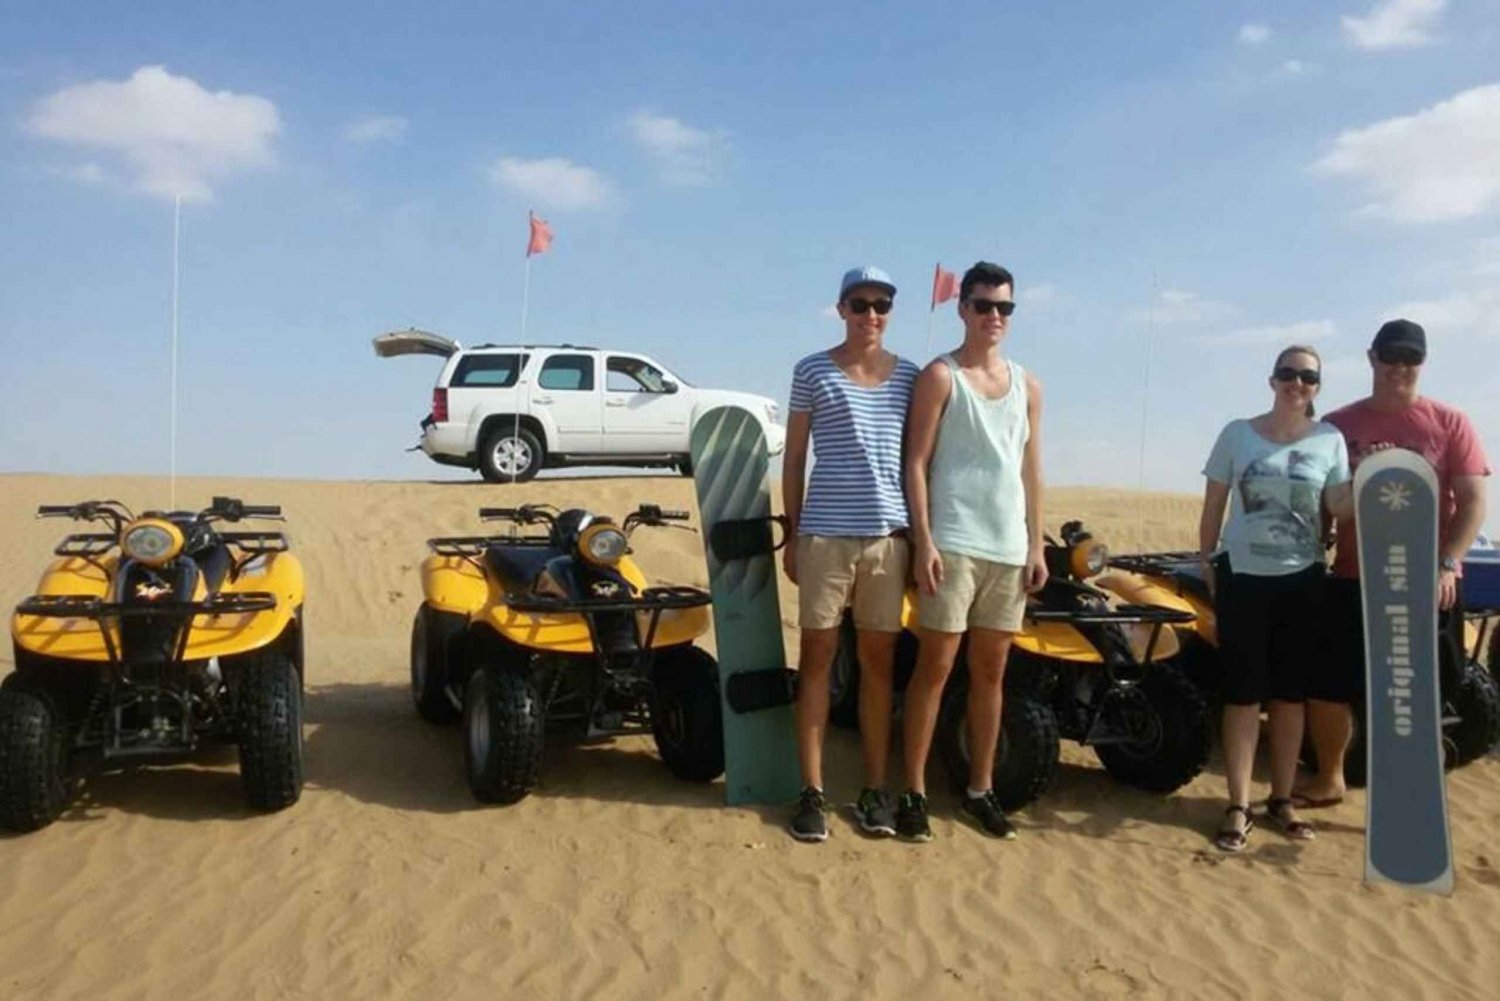 Dubai: ATV, kamelridning og sandsurfing